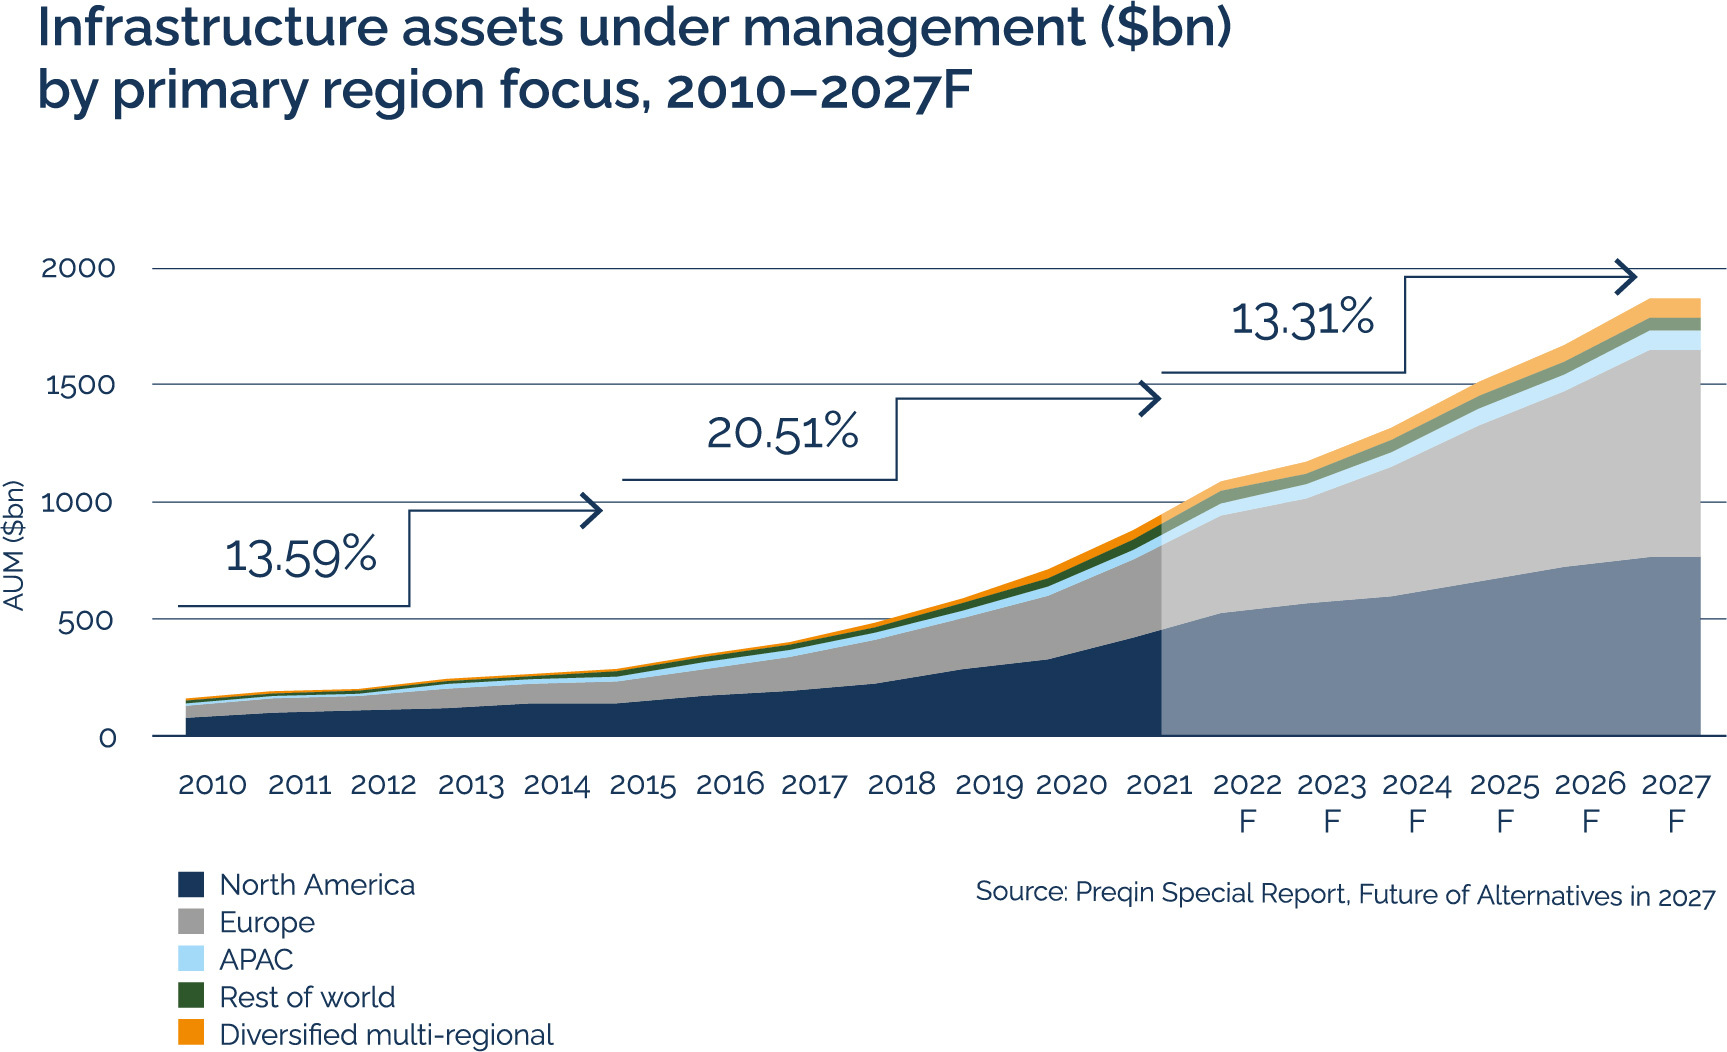 Infrastructure assets under management ($bn) by primary region focus, 2010-2027F